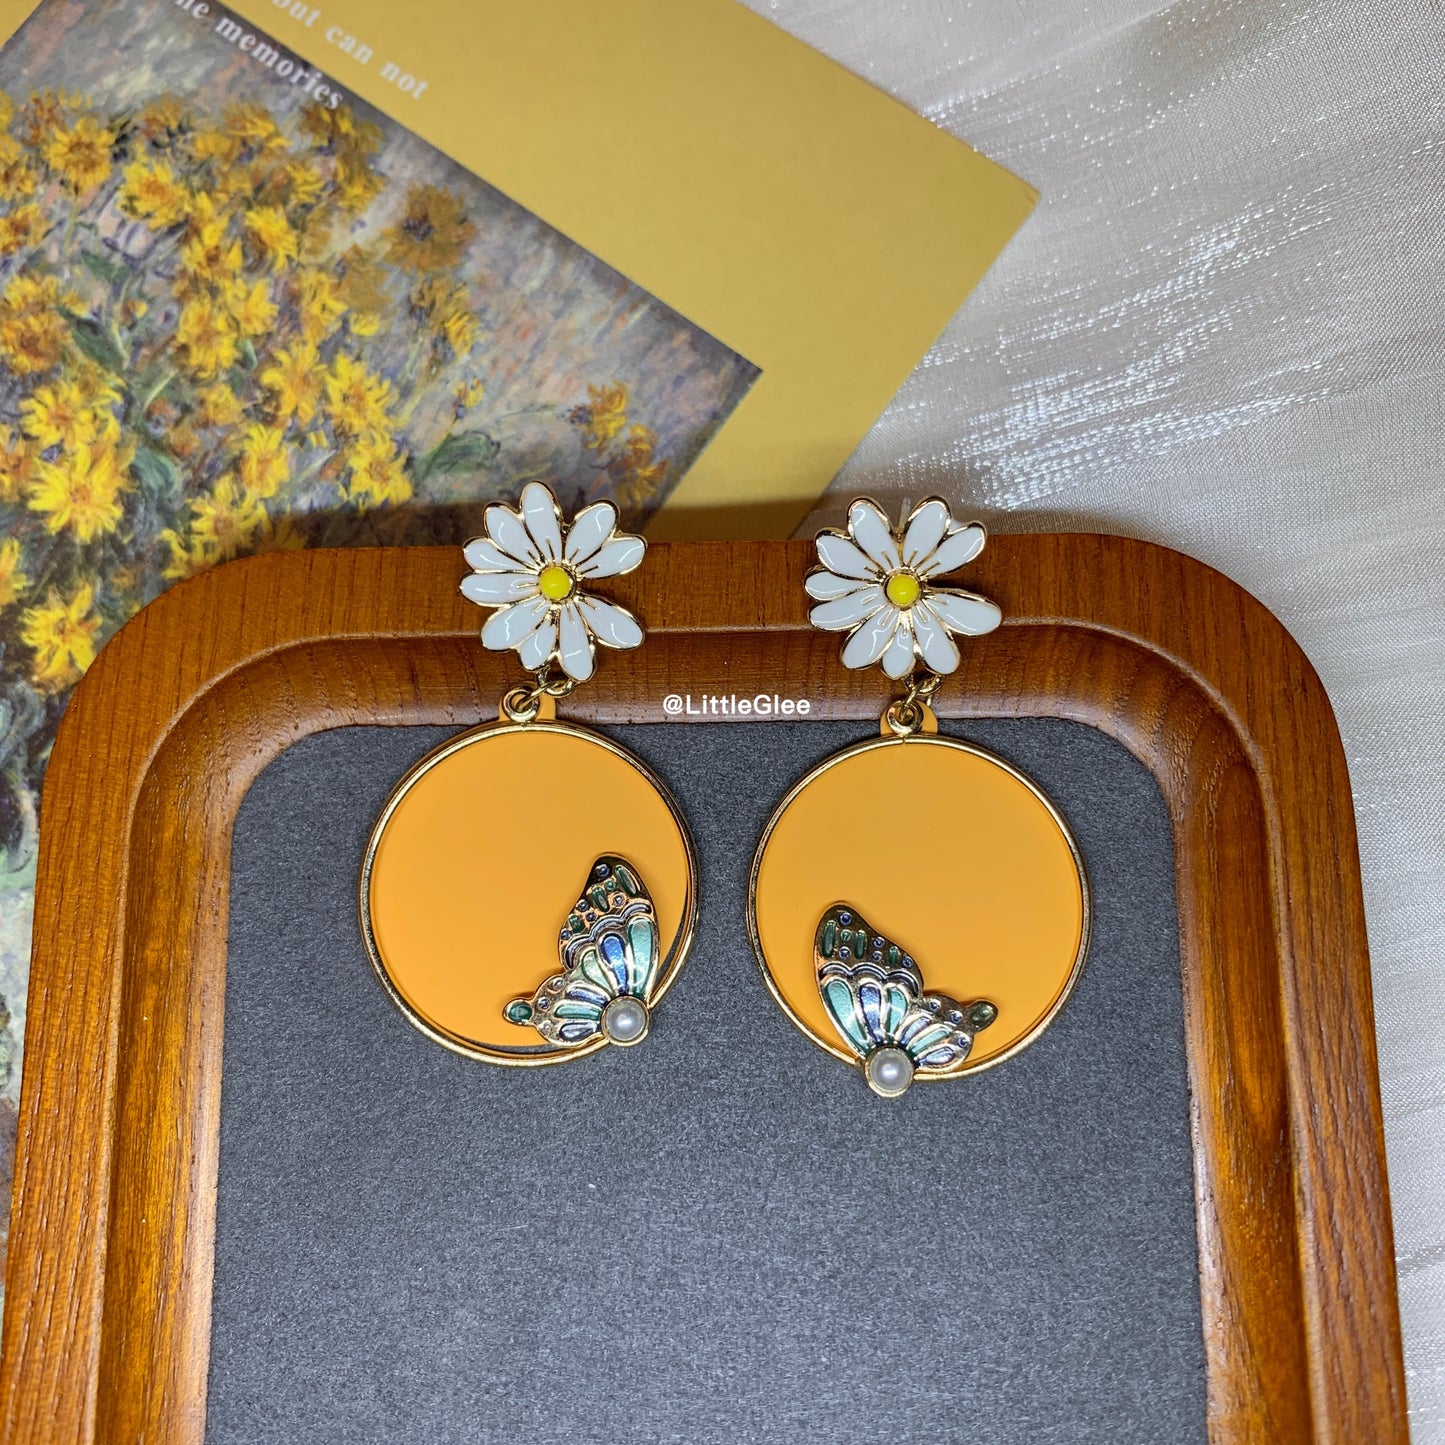 Daisy Butterfly Enamel Replicate Leather Pearls Earrings (S925 Post)